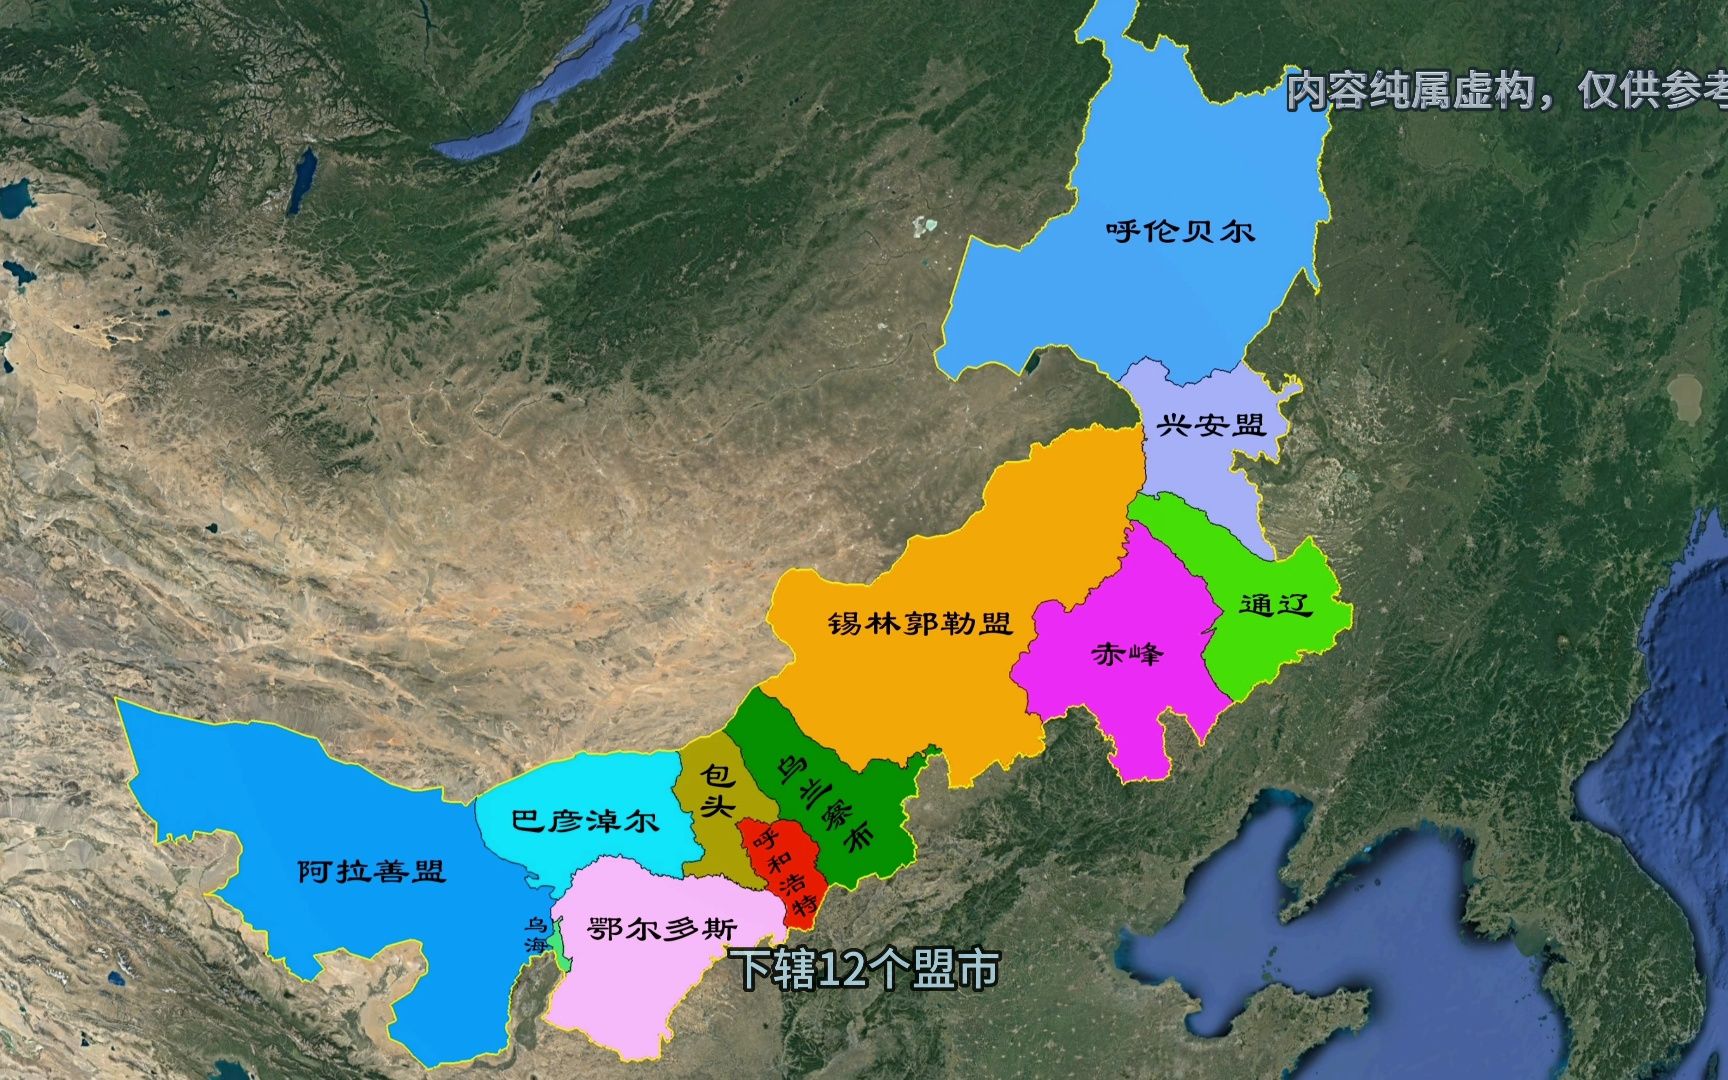 内蒙古盟市分布地图图片